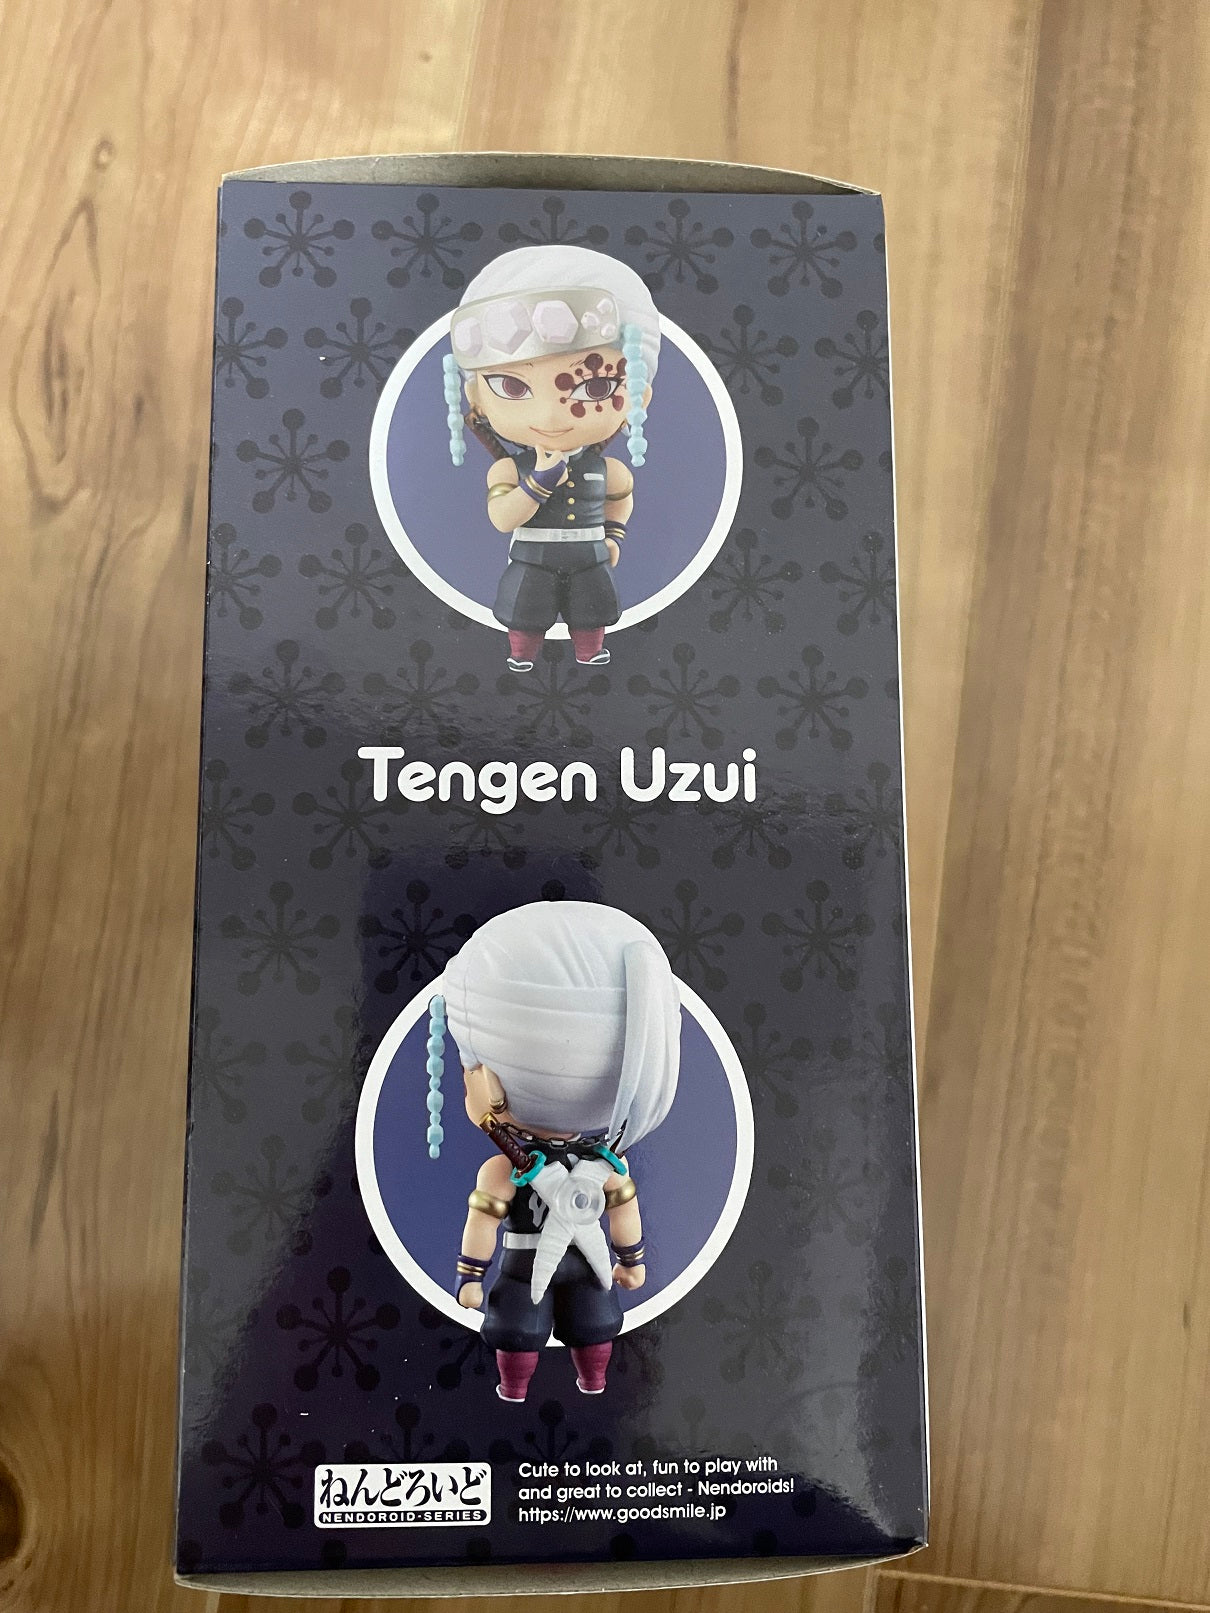 Nendoroid Tengen Uzui Action Figure for Sale